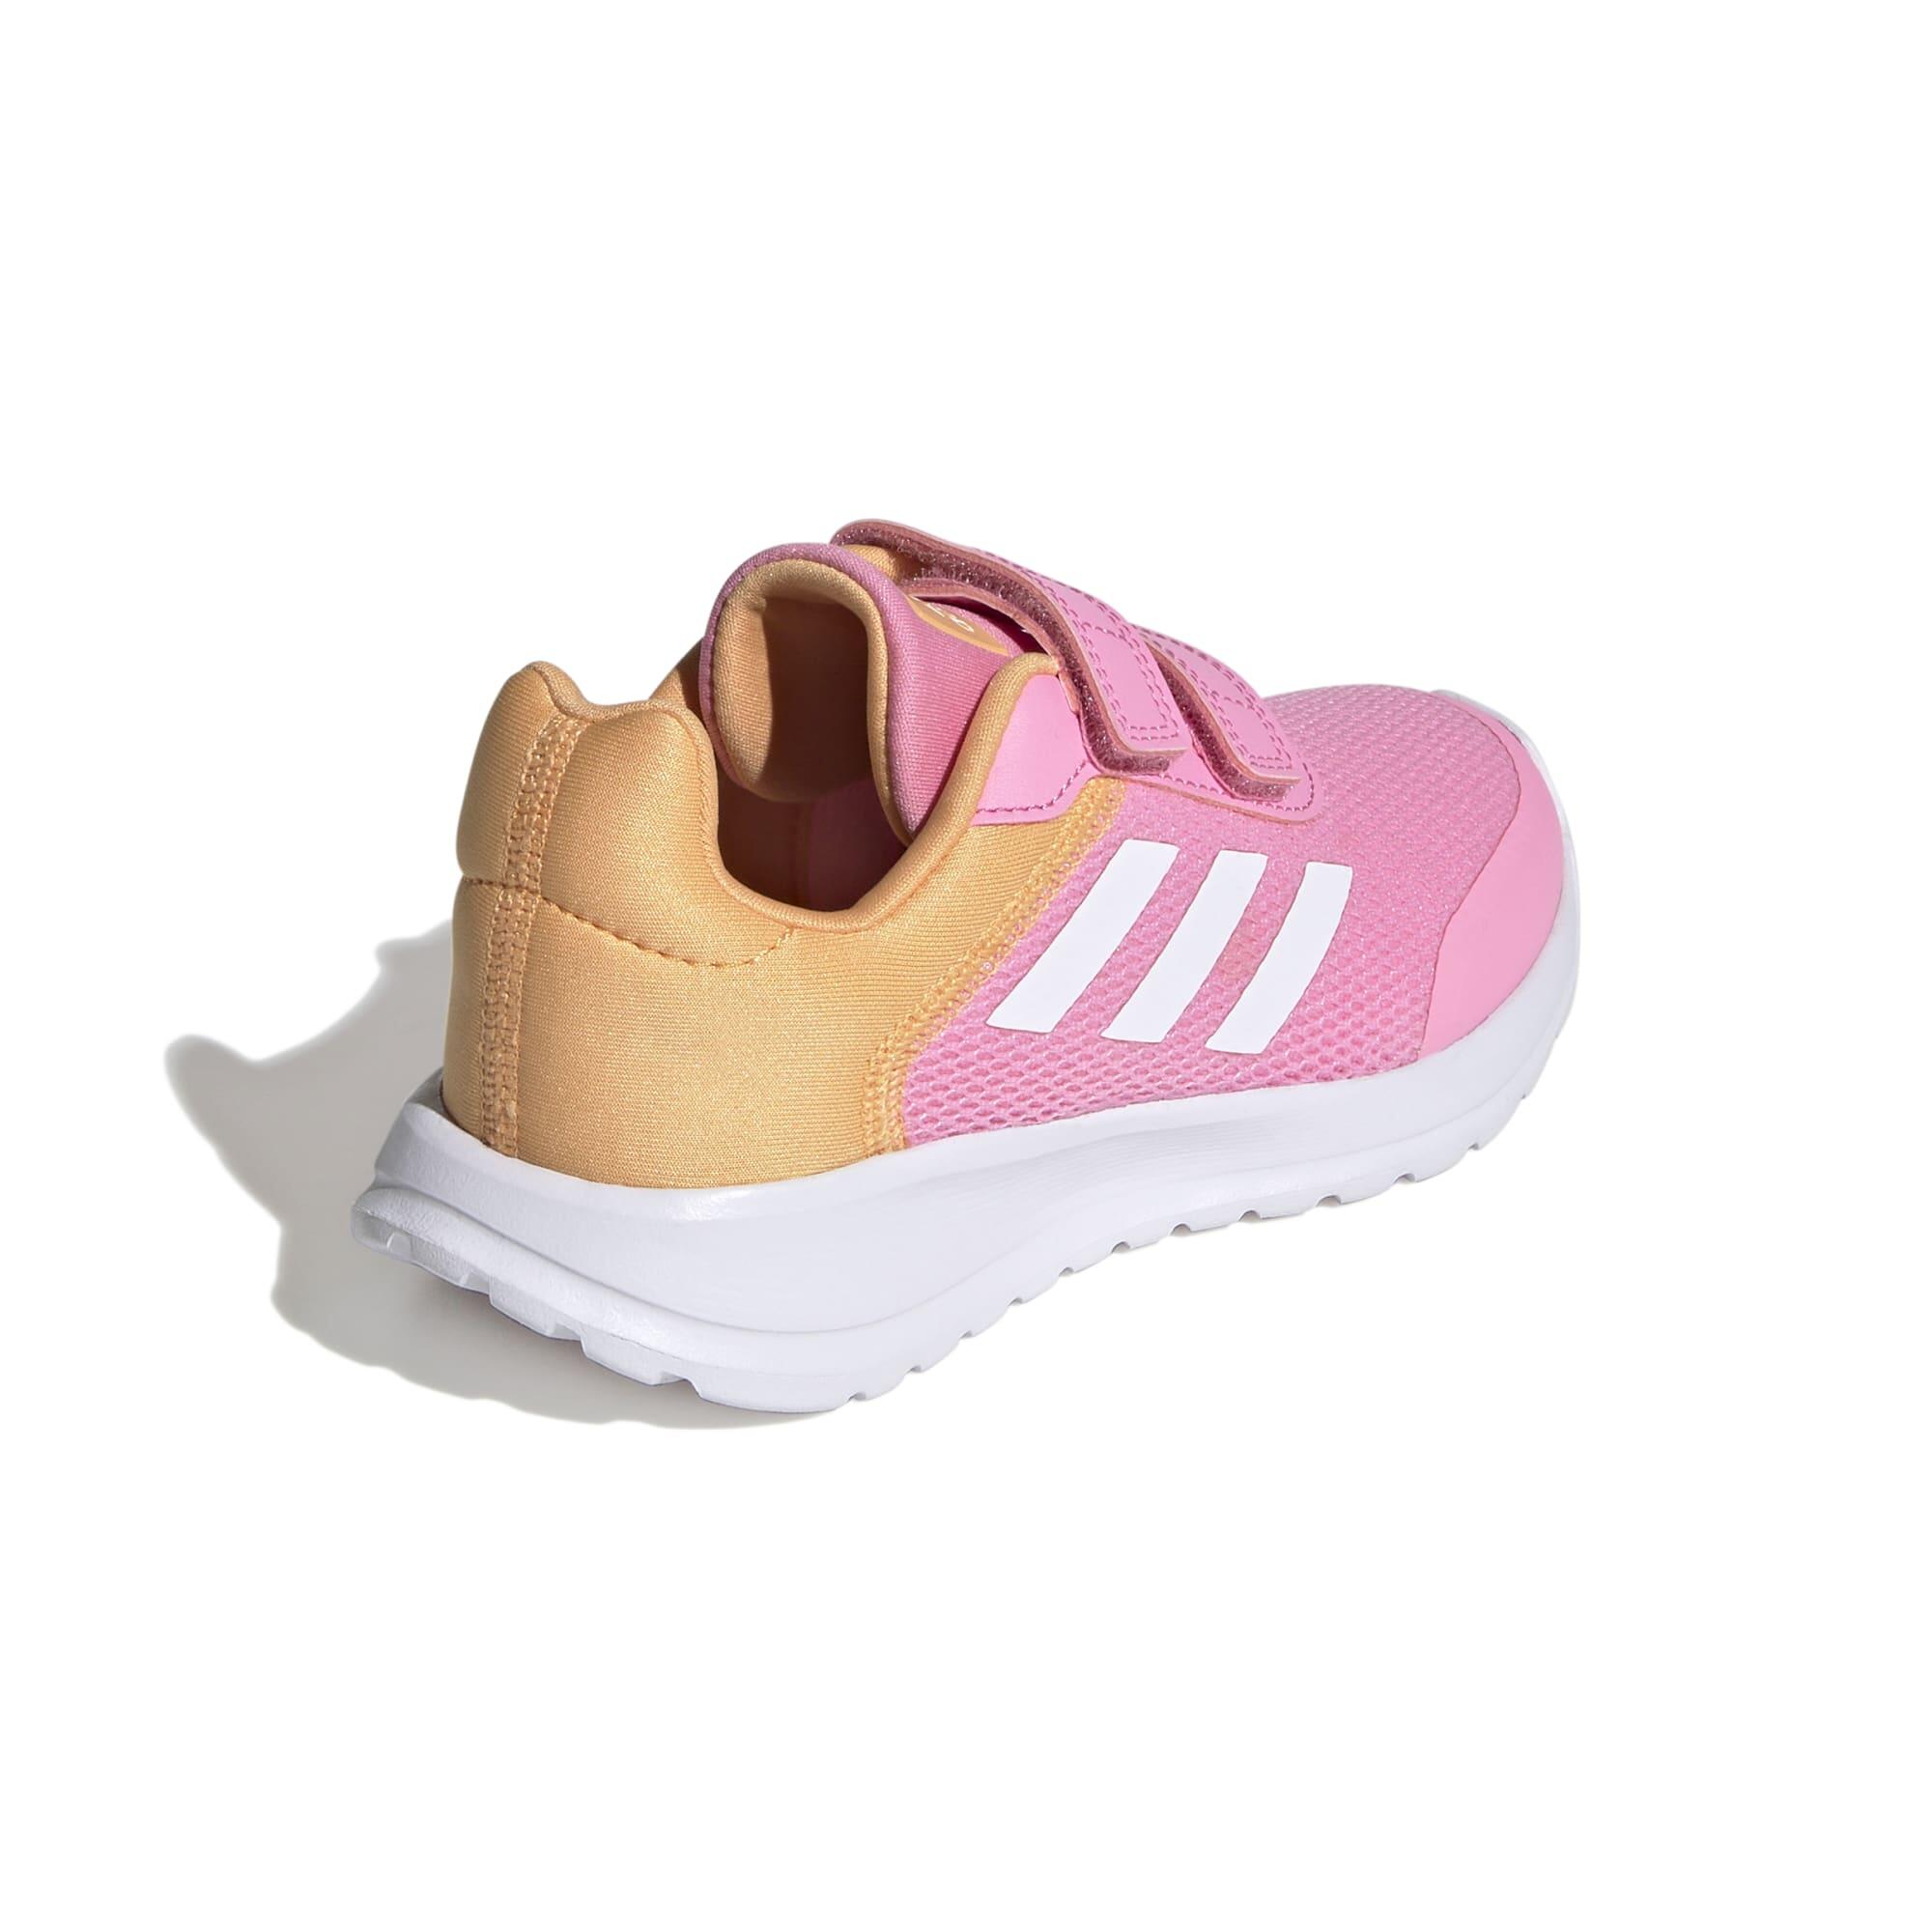 Kids' Shoes Tensaur Run - Pink / White / Orange 4/7